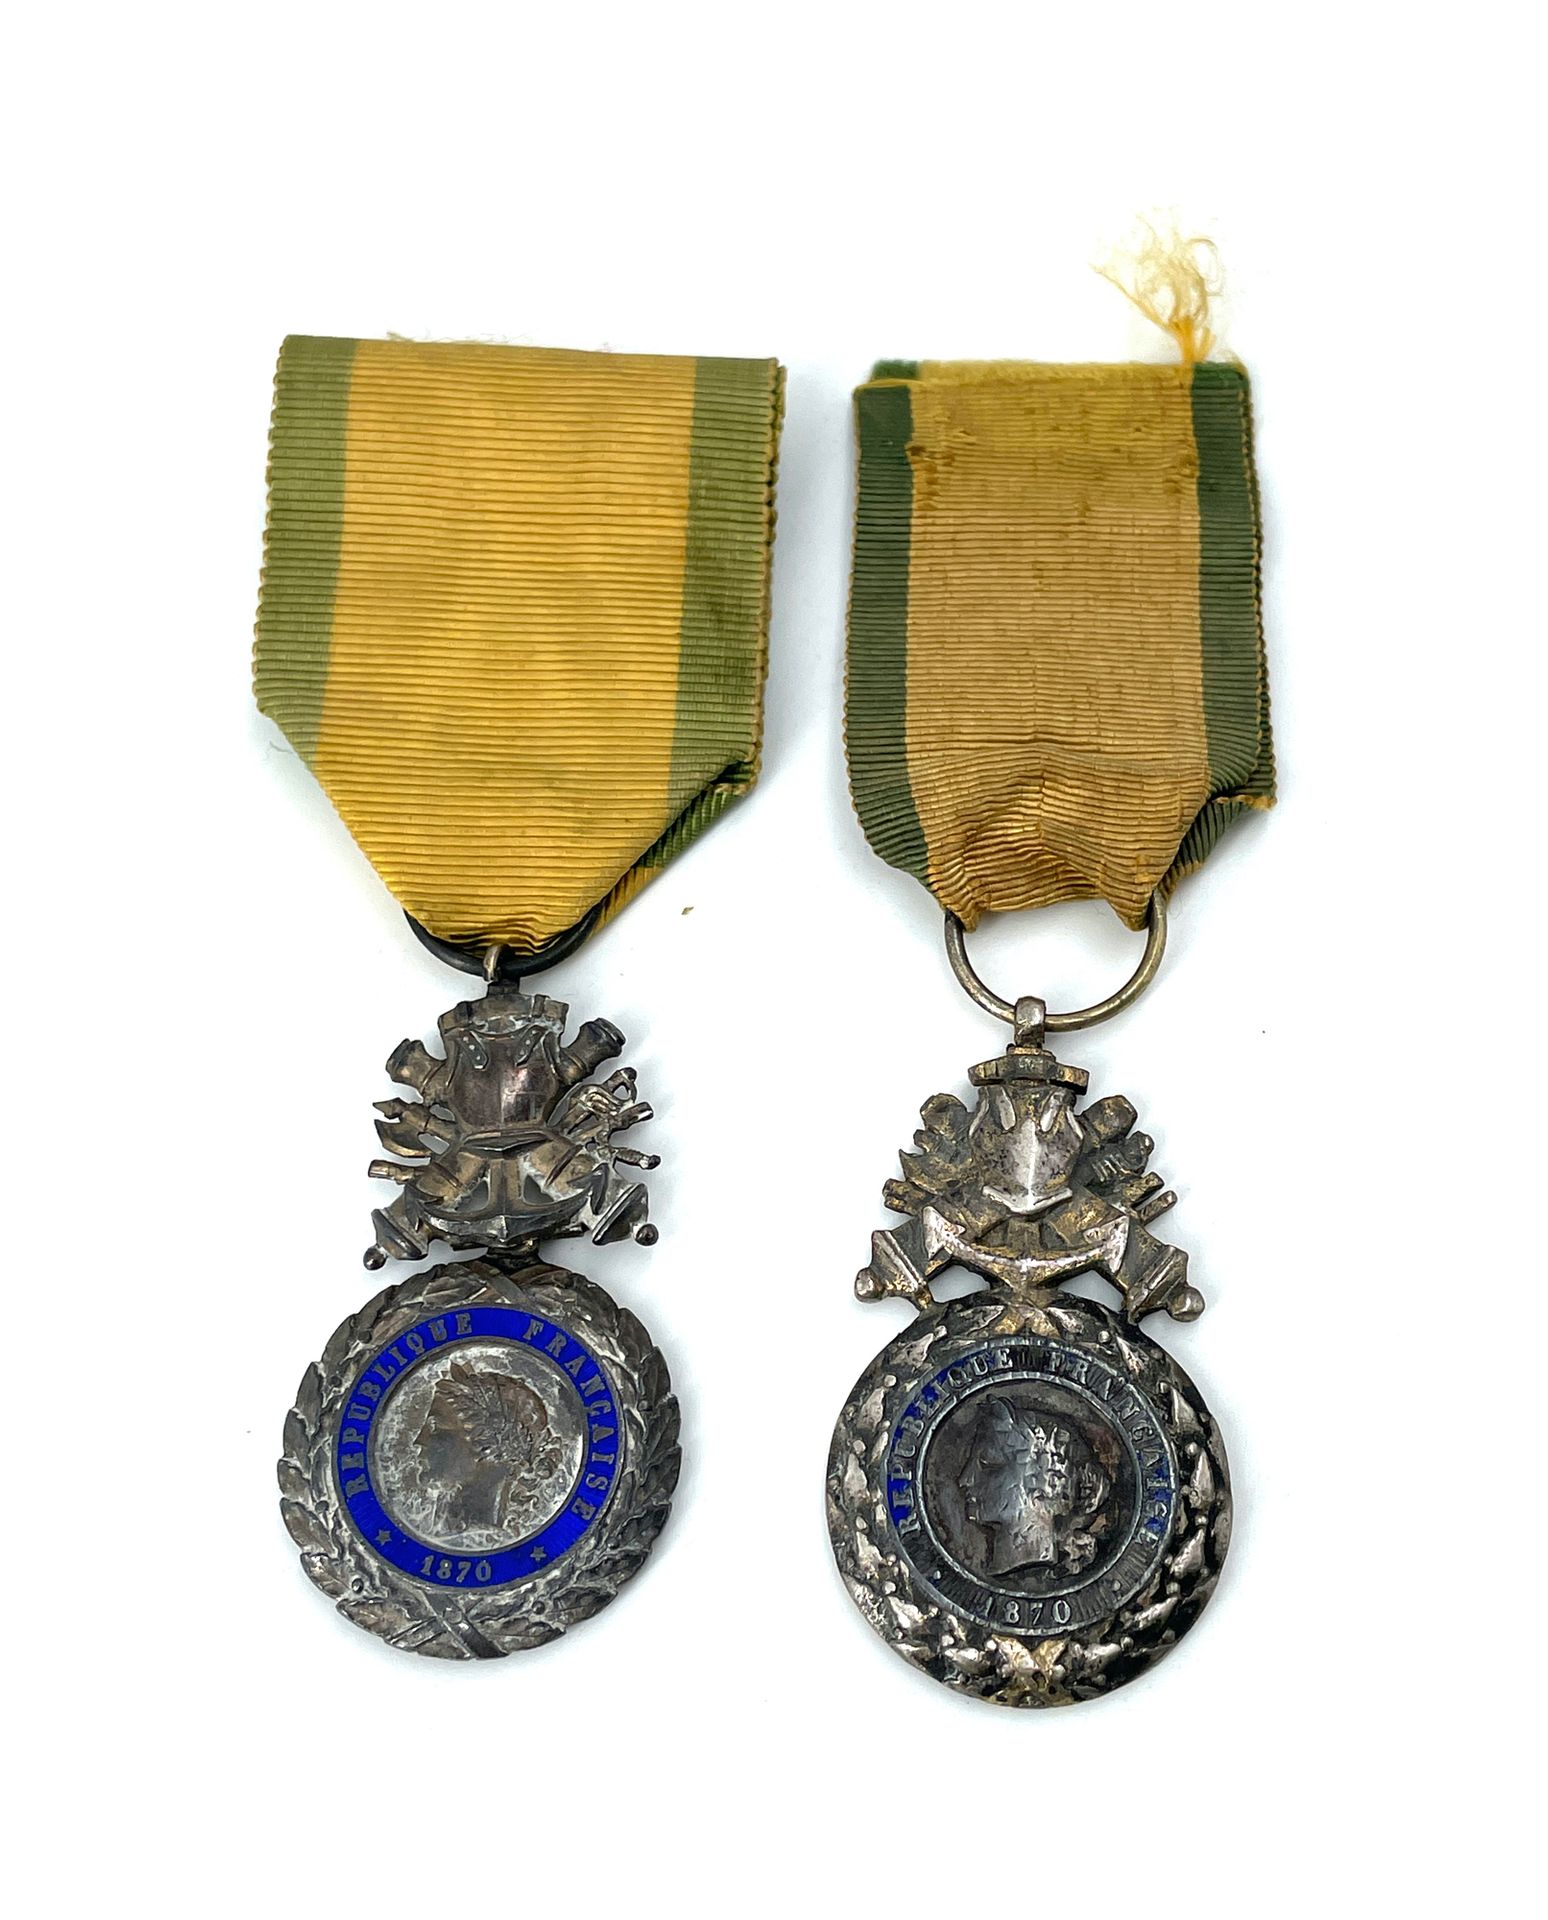 Null 法国 第三共和国的两枚军功章，其中一枚是制造粗糙的一体式模型。
银和珐琅（碎片）。
Ribbons。